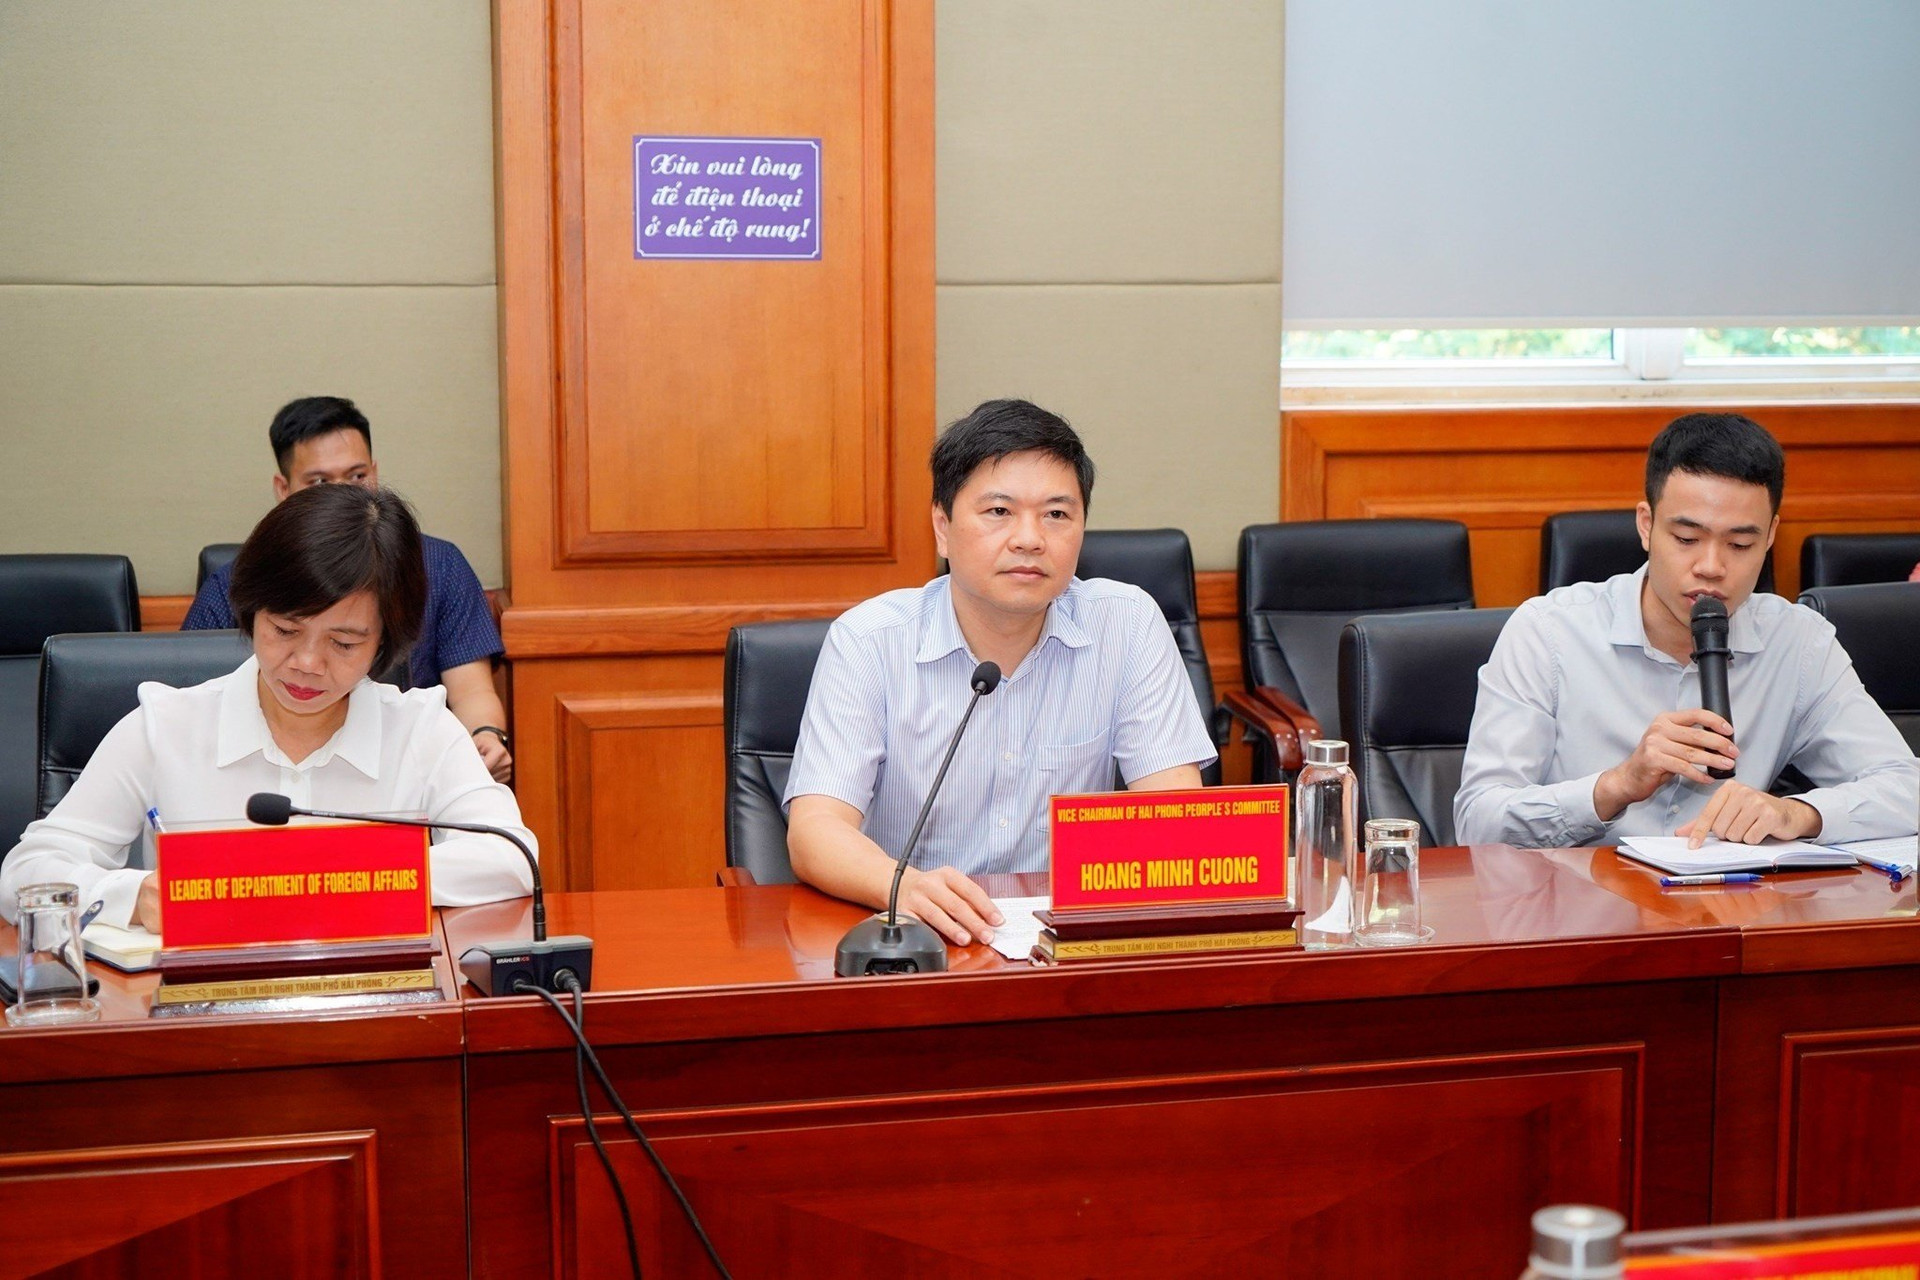 Phó Chủ tịch UBND thành phố Hải Phòng, Hoàng Minh Cường thông tin tại cuộc làm việc.